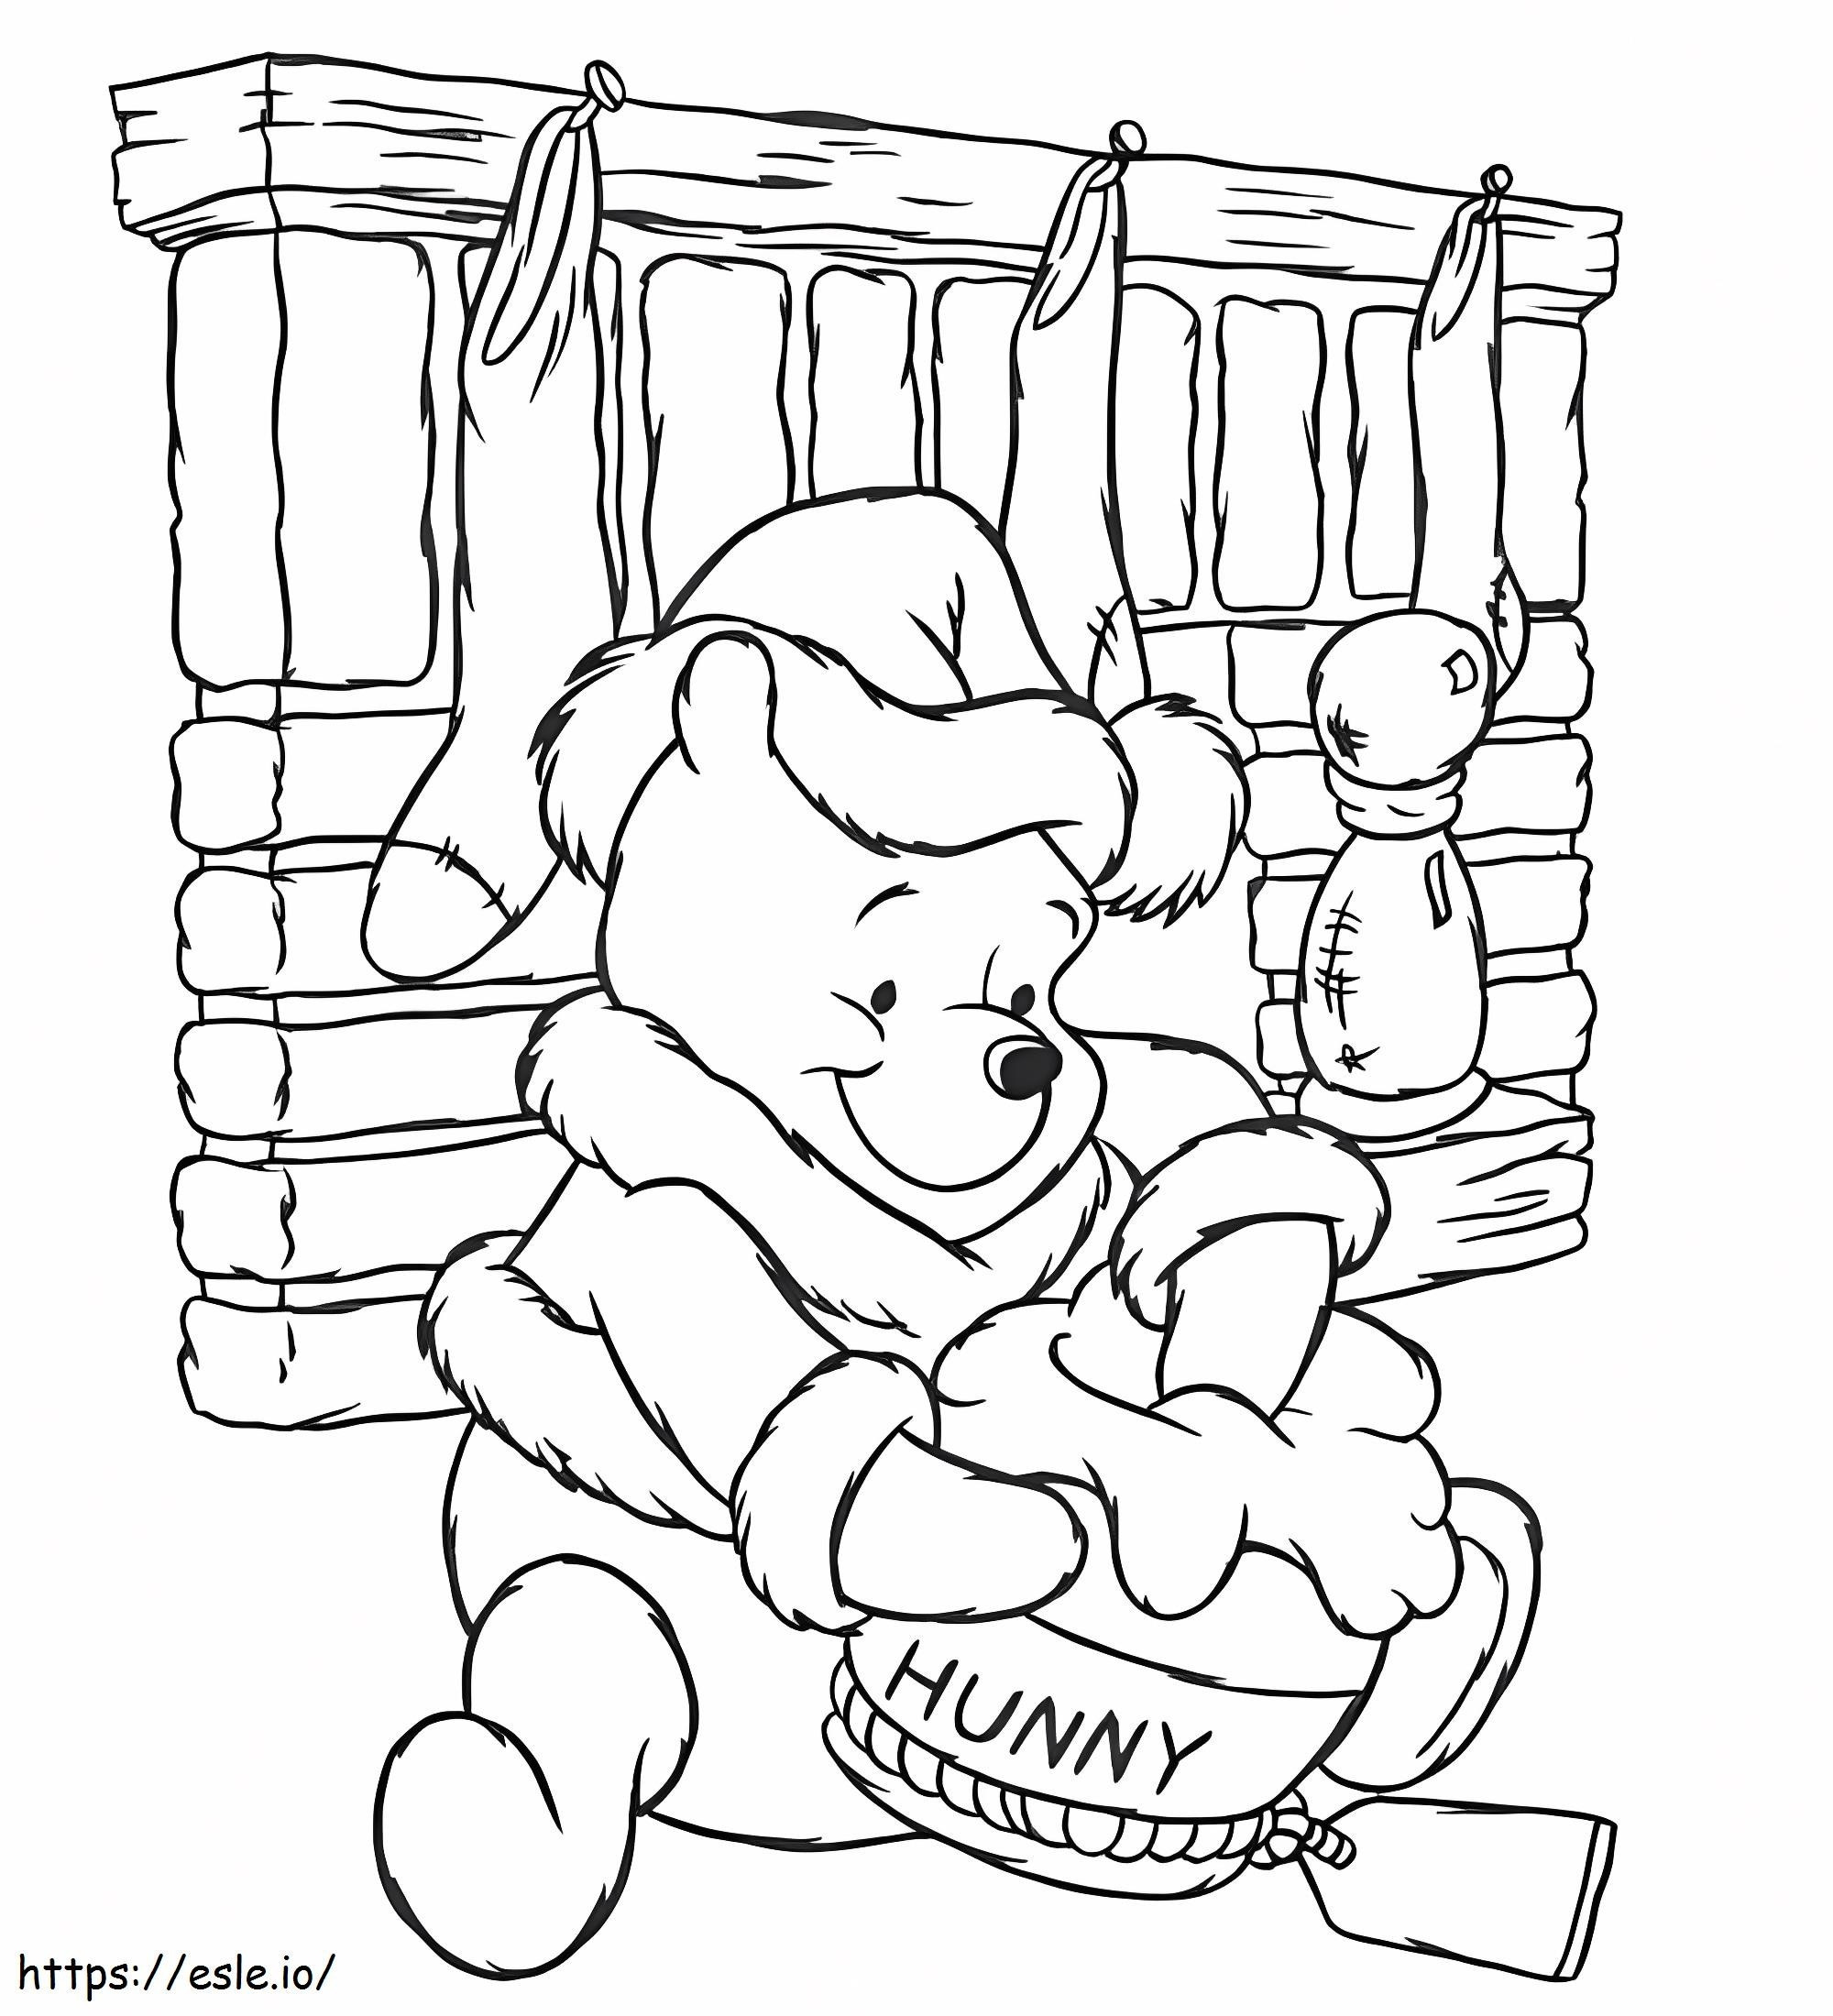 Coloriage Winnie l'ourson Disney Noël à imprimer dessin